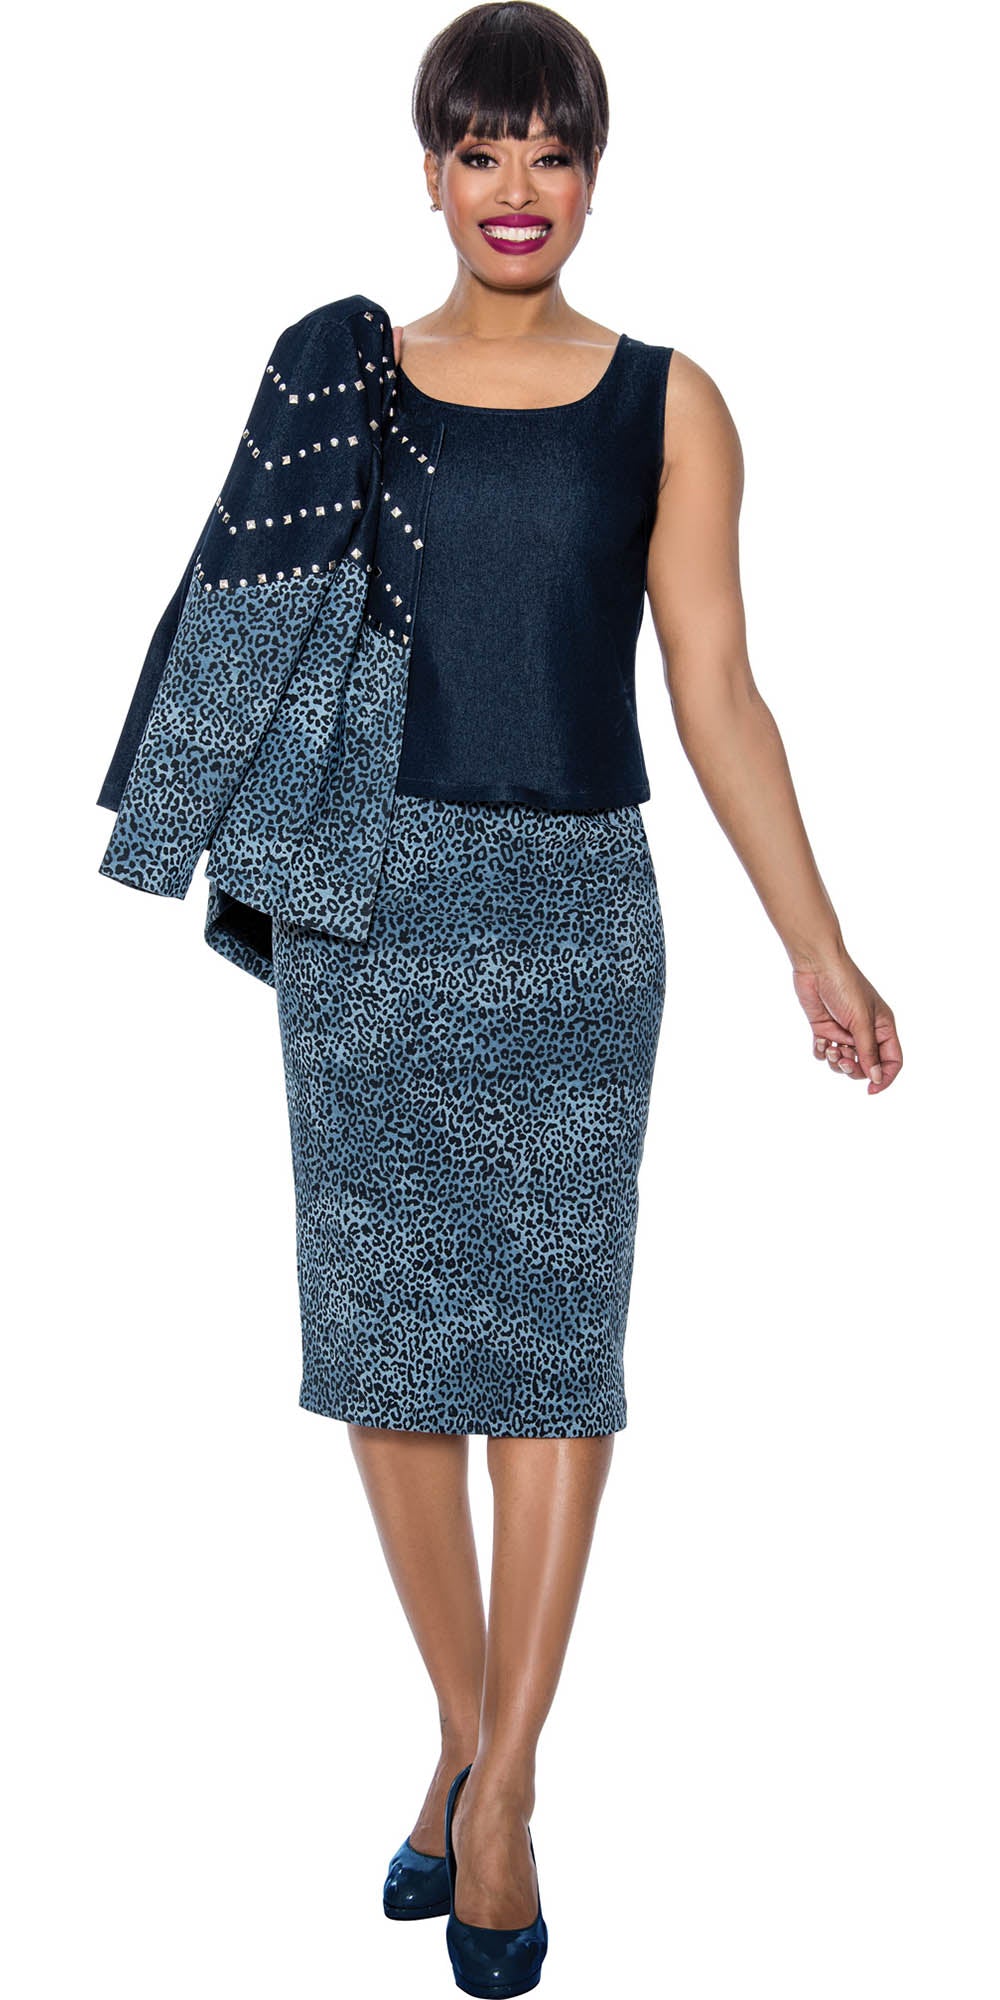 Devine Sport - 63933 - Blue - Animal Print Embellished Denim 3pc Skirt Set